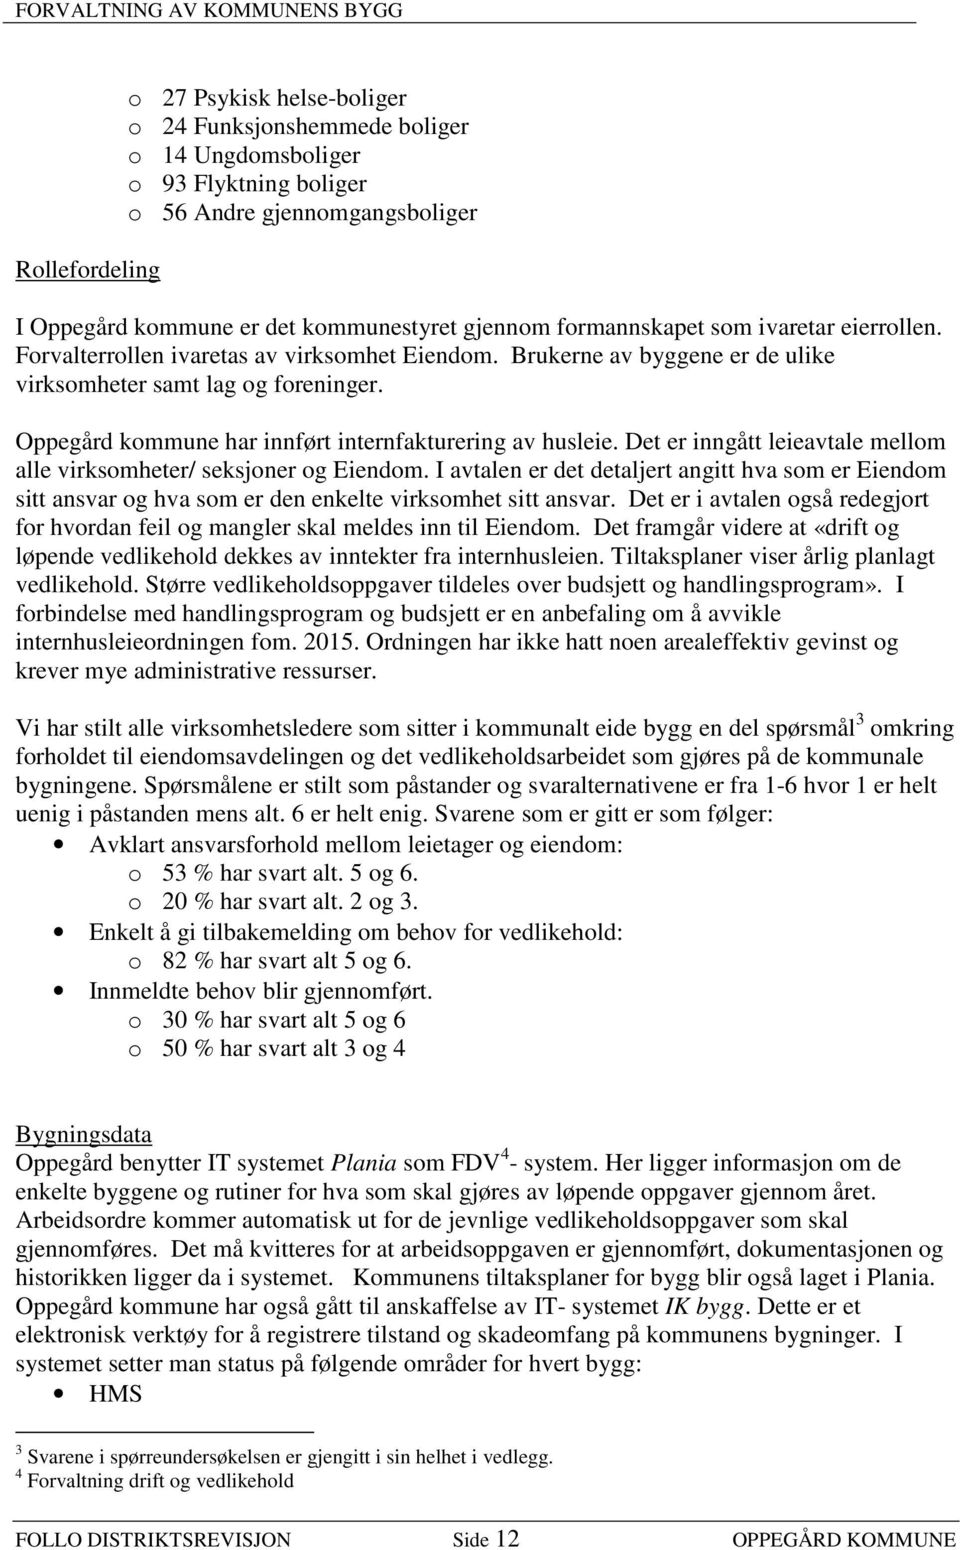 Oppegård kommune har innført internfakturering av husleie. Det er inngått leieavtale mellom alle virksomheter/ seksjoner og Eiendom.